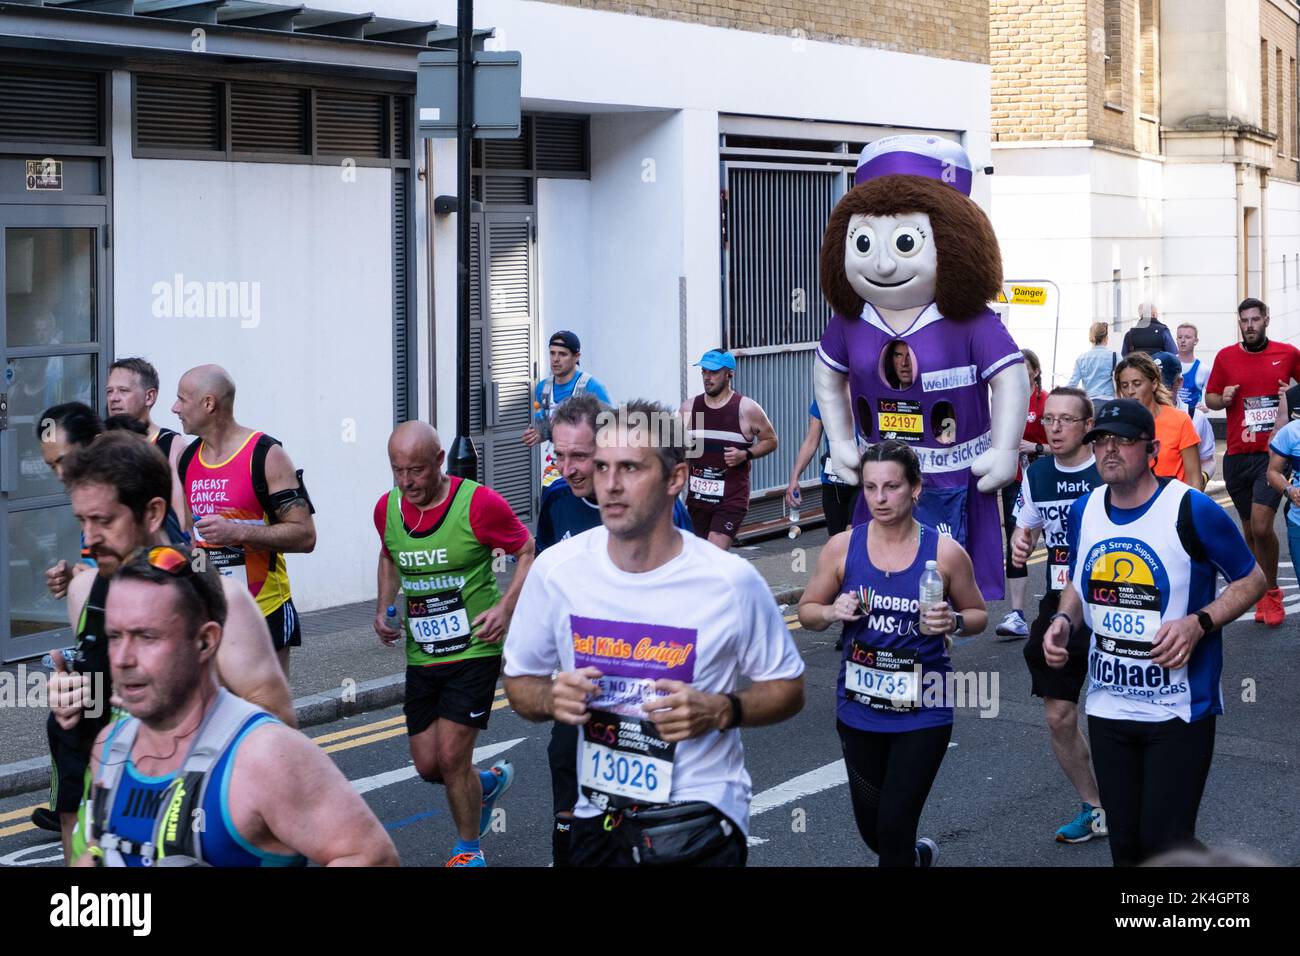 Déguisement de fantaisie Giant Nurse Runner dans le Marathon de Londres 2022 à Narrow Street dans l'est de Londres, septembre 2022, Angleterre, Royaume-Uni. Banque D'Images